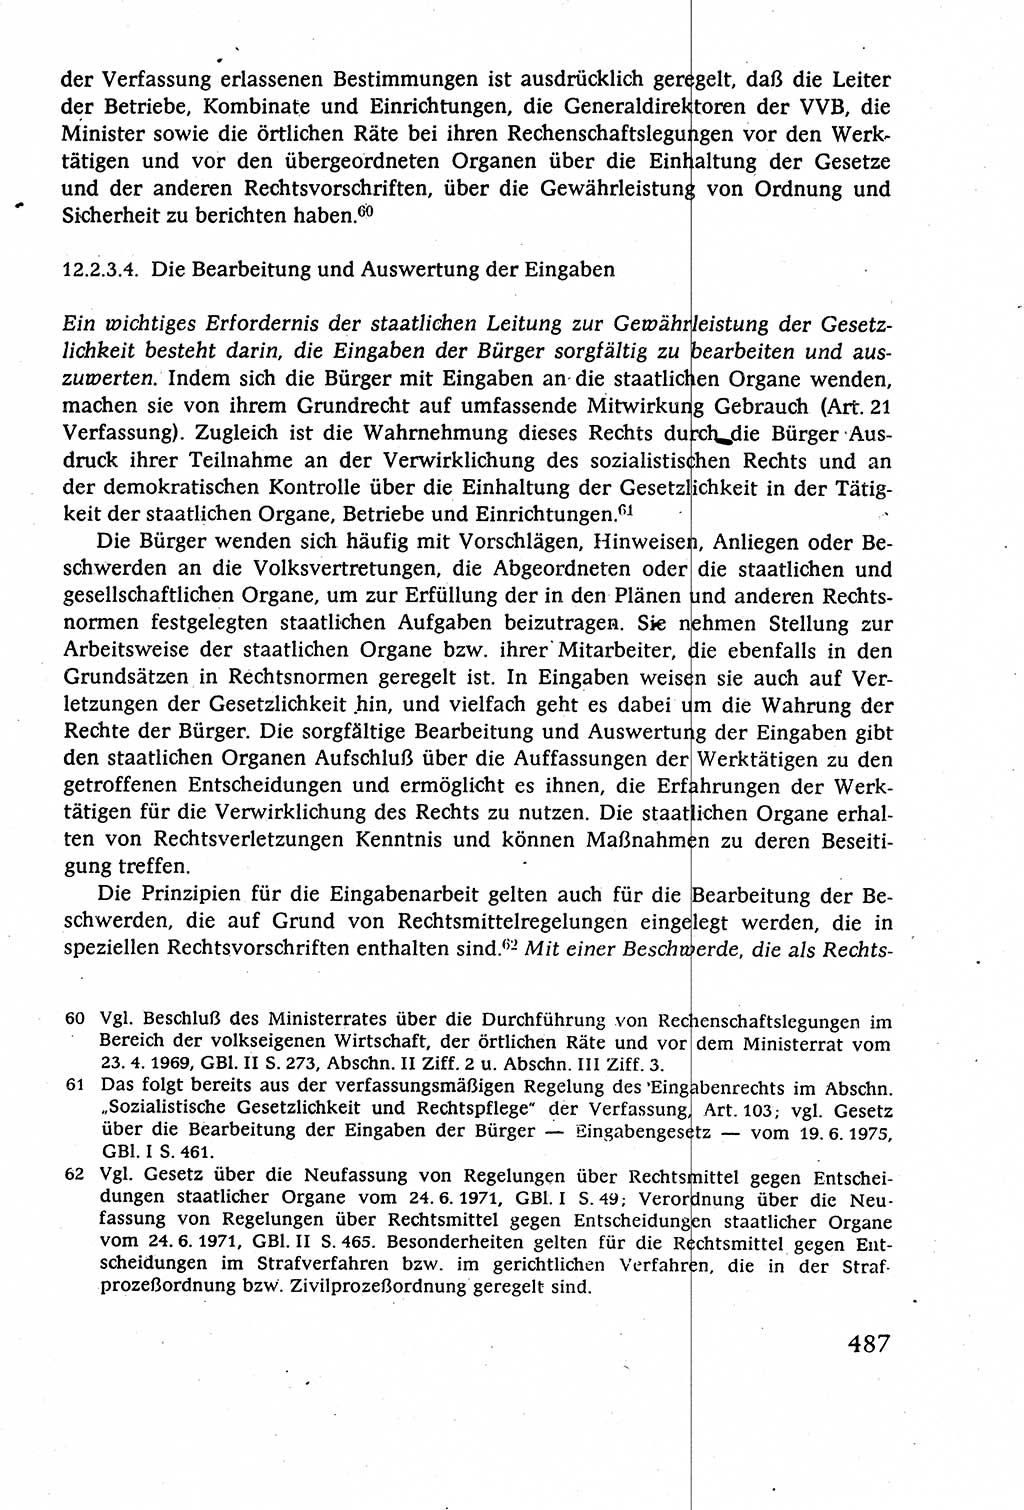 Staatsrecht der DDR (Deutsche Demokratische Republik), Lehrbuch 1977, Seite 487 (St.-R. DDR Lb. 1977, S. 487)